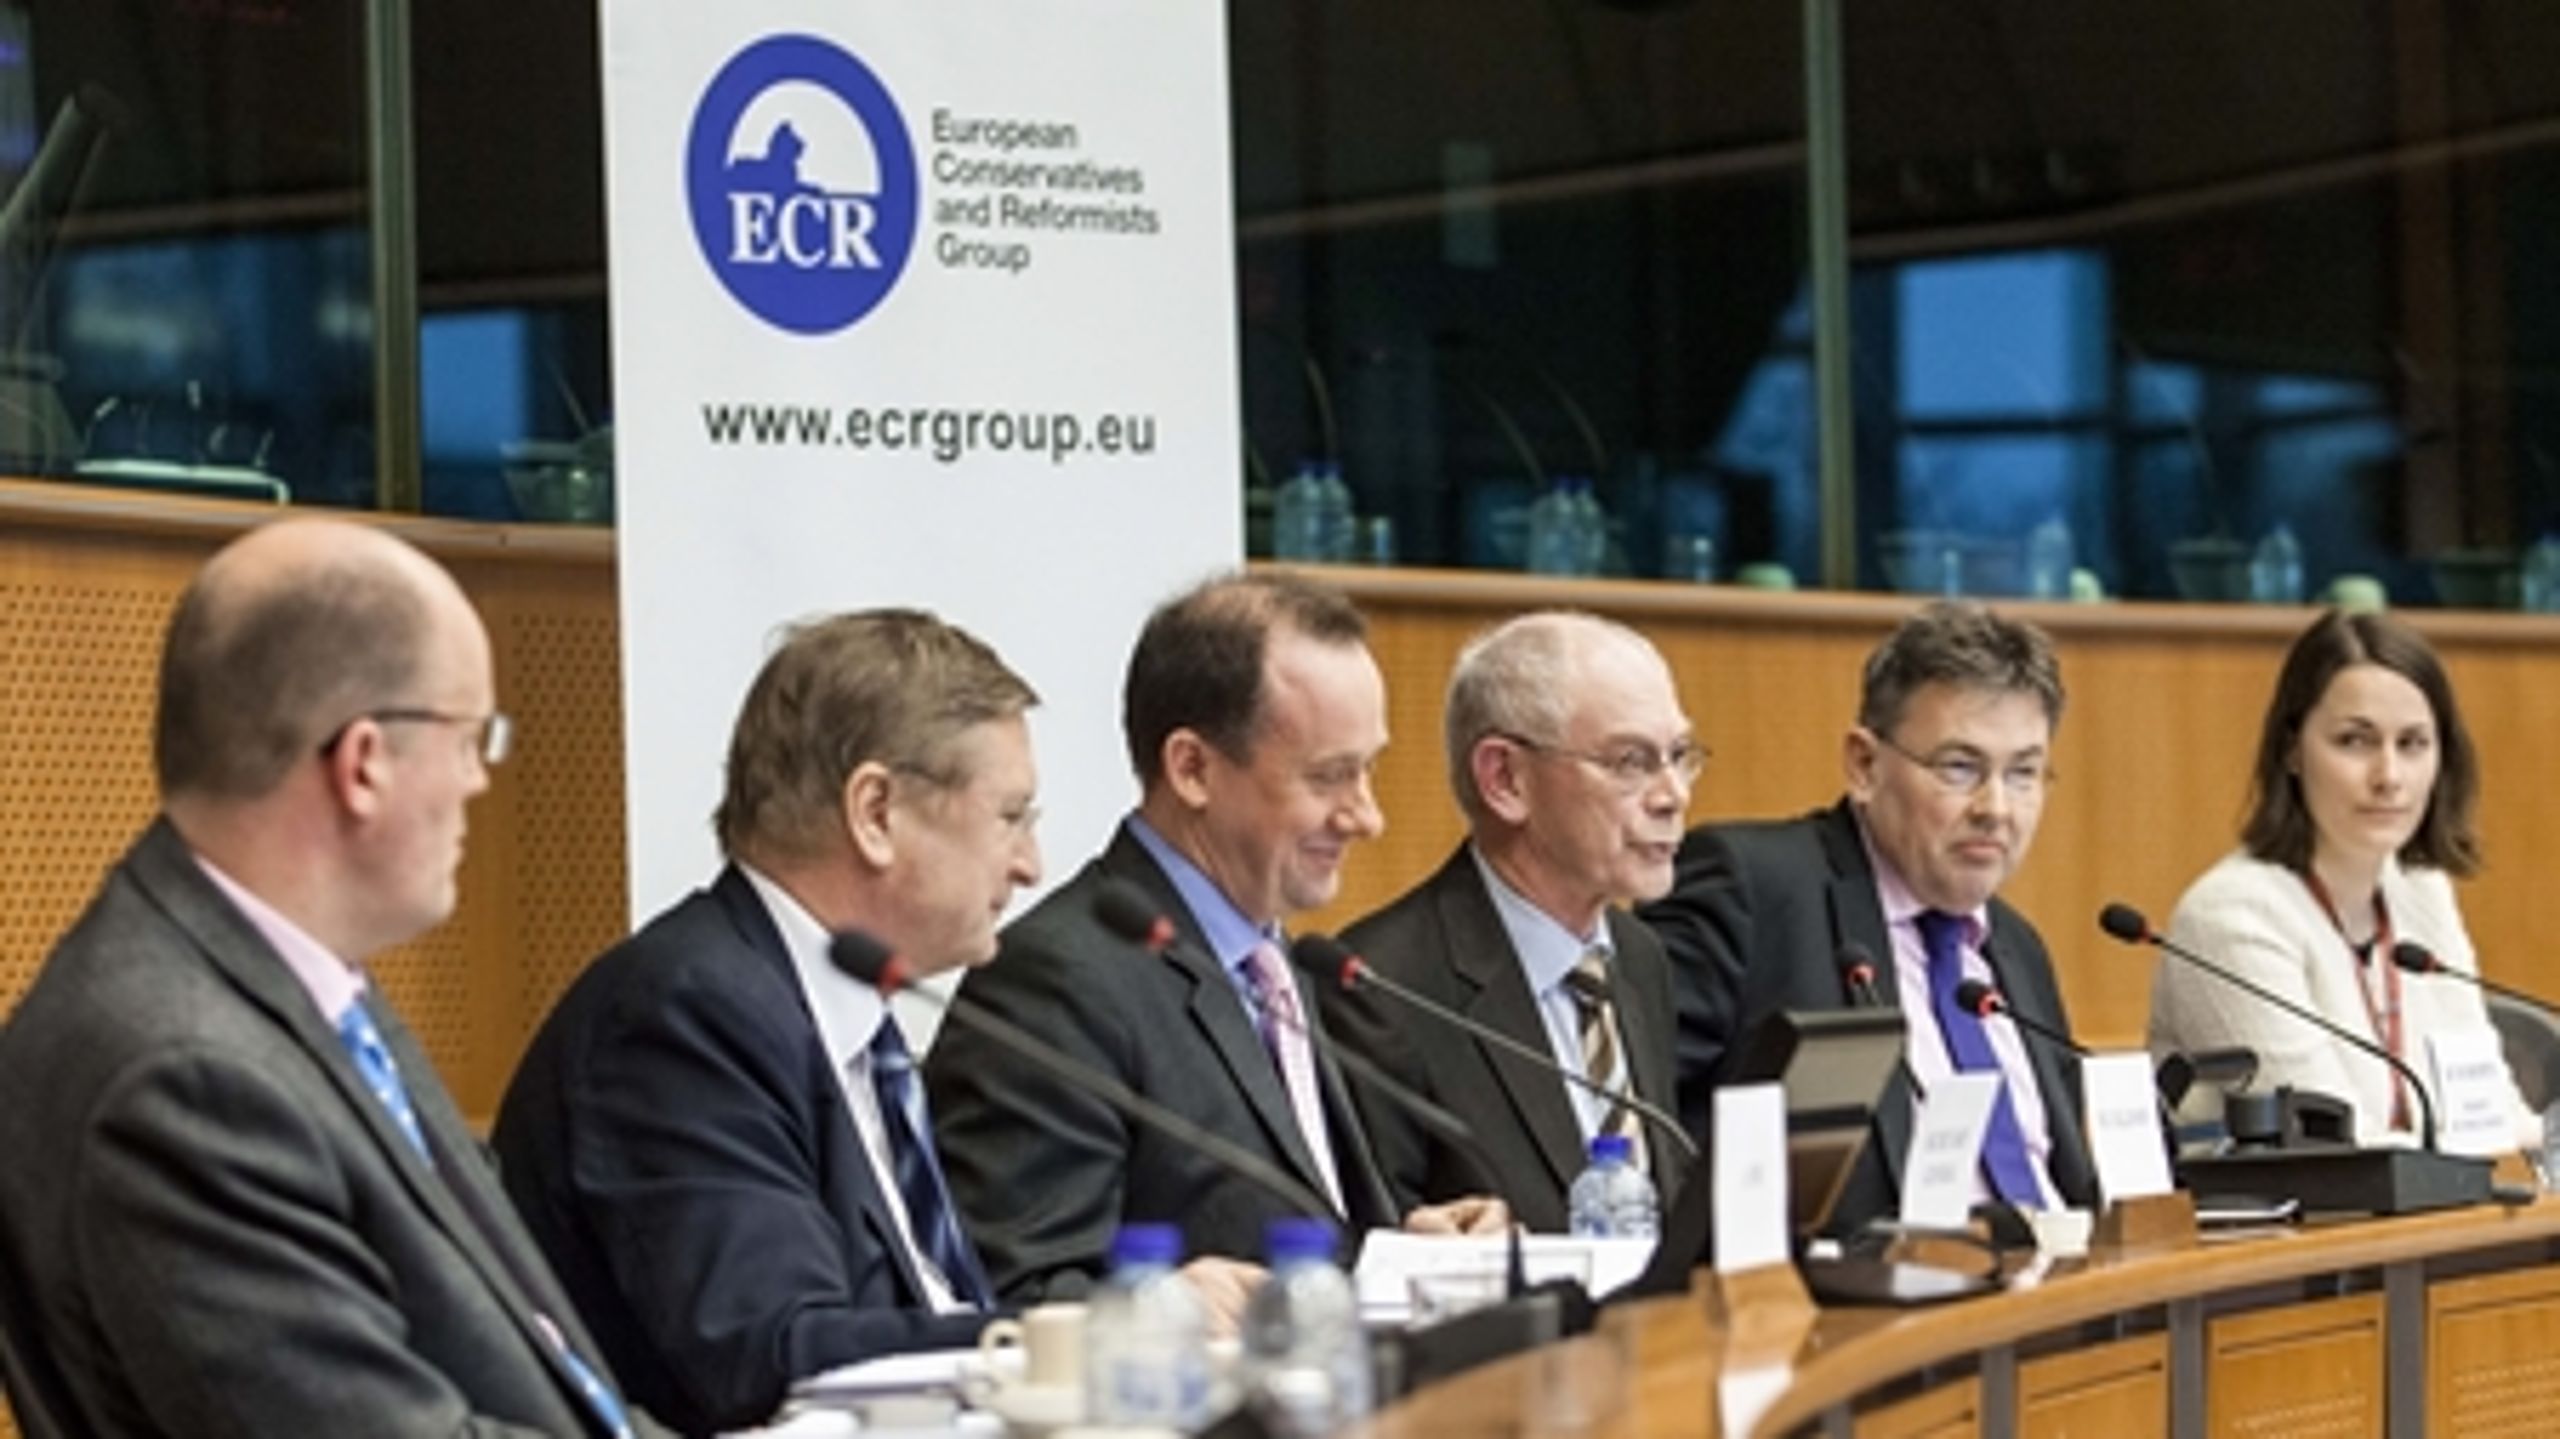 Gruppemøde i ECR med deltagelse af formand for Det Europæiske Råd Herman Van Rompuy (i midten). I fremtiden kan gruppemøderne i ECR blive noget mere farverige.